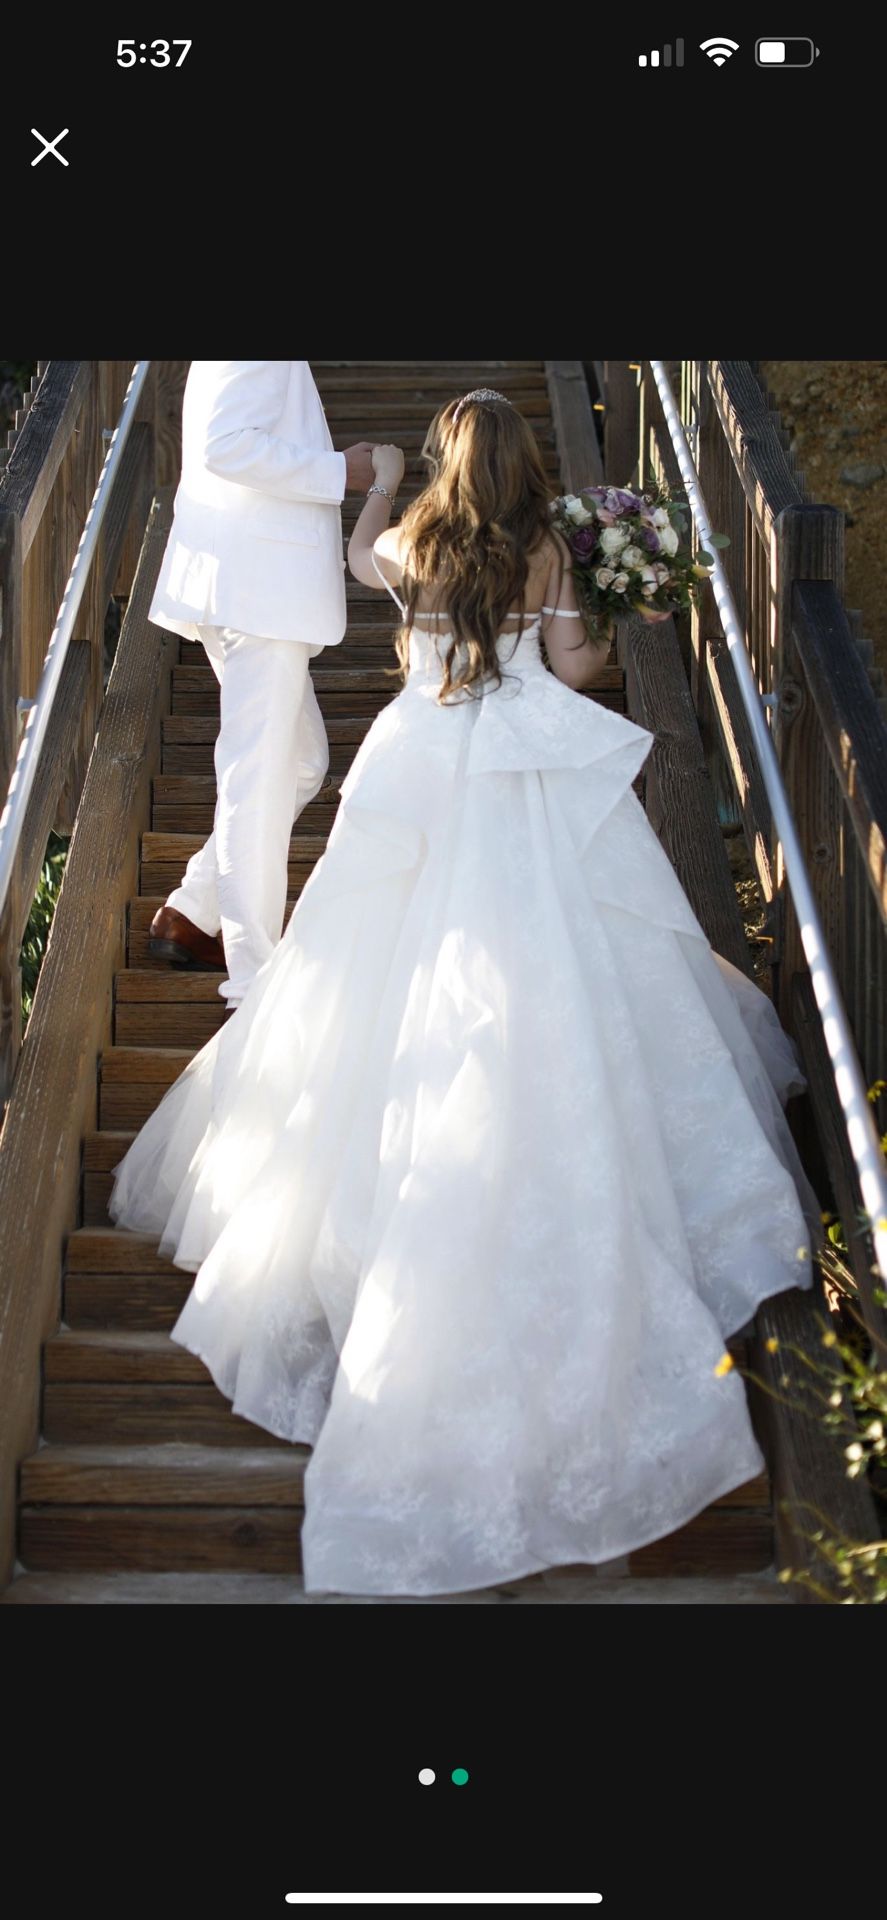 Wedding Dress - Size 4